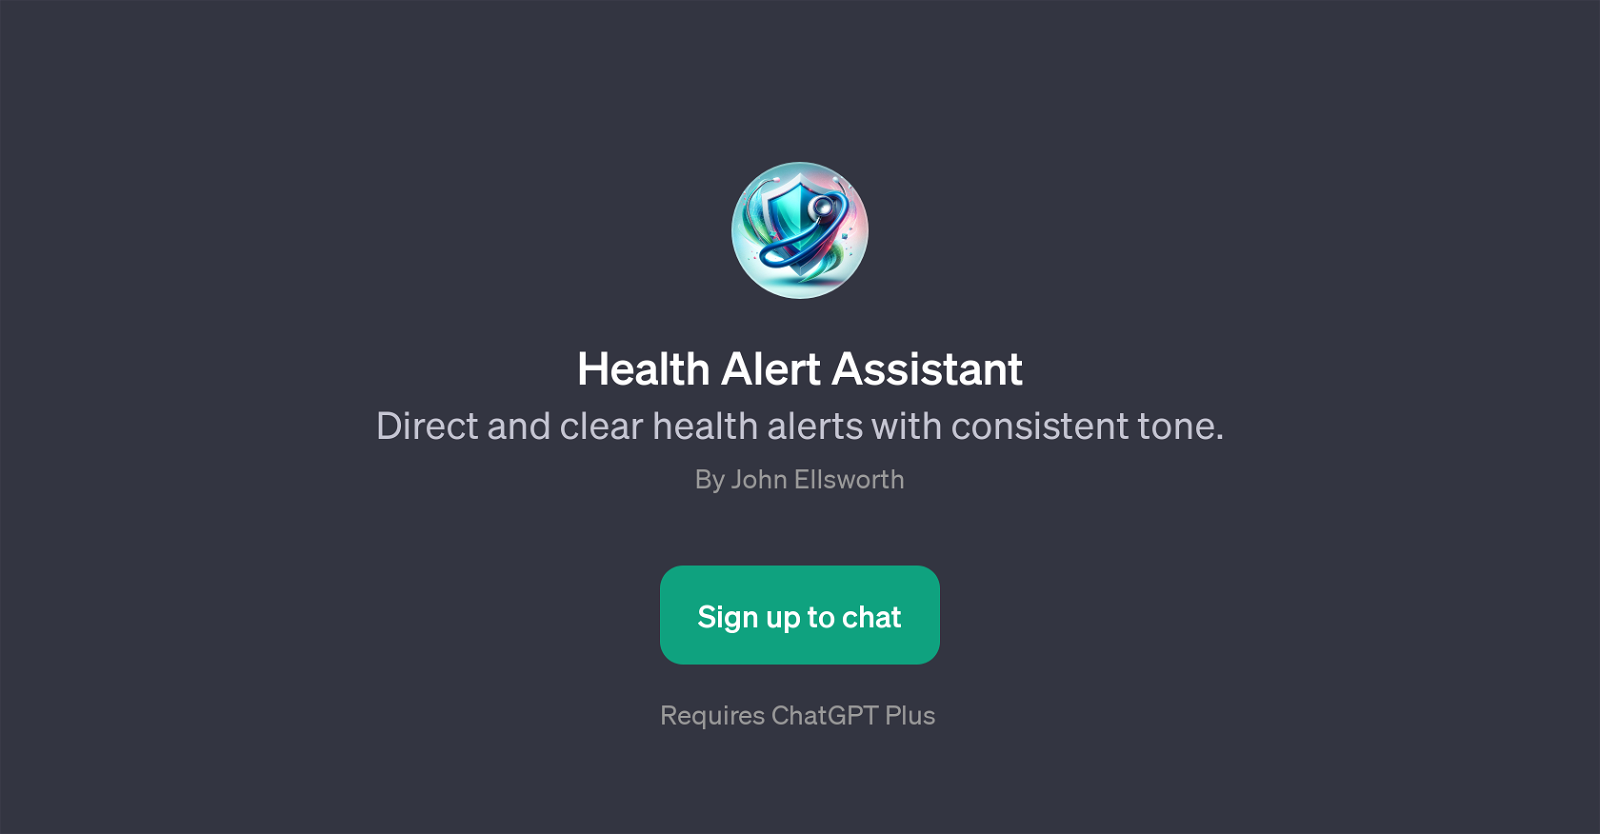 Health Alert Assistant website